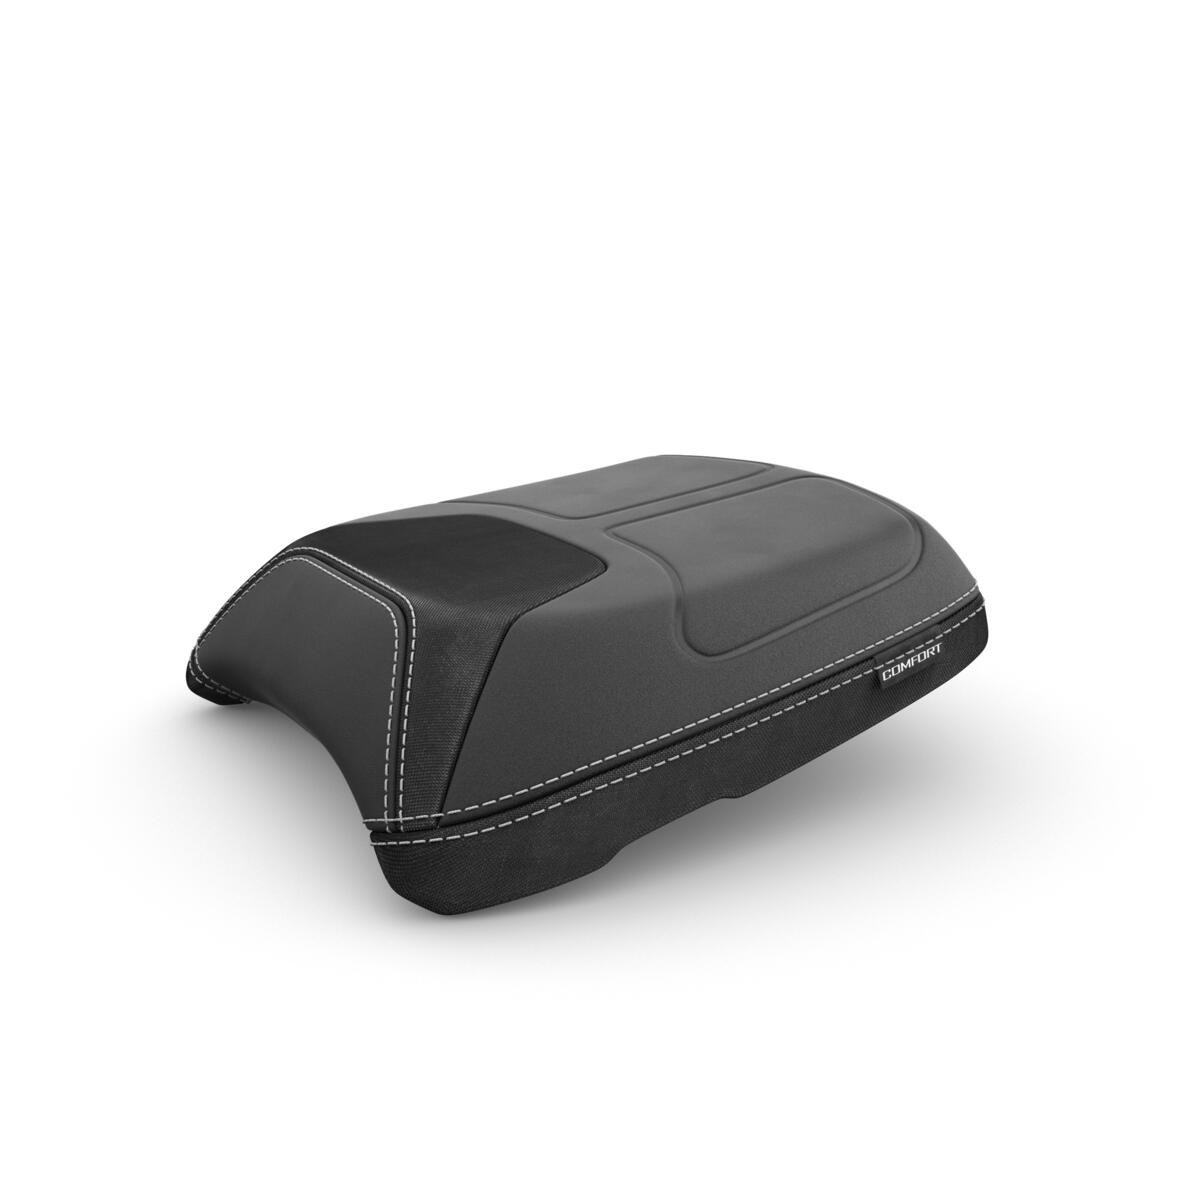 Špičkové cestovní vybavení pro váš TRACER 9, abyste mohli vyrazit na cestu v plně funkčním stylu. Vysoký štít, vyhřívané rukojeti a vyhřívané pohodlné sedlo poskytují extra pohodlí pro jízdu po nekonečných silnicích. V případě, že potřebujete ještě větší ochranu před větrem, obsahuje sada Travel pack také přídavný štít, který vás lépe skryje. Boční kufry a horní kufr představují perfektní způsob, jak si vzít věci na cestu s sebou.  Snadno nabíjejte svůj telefon nebo navigaci pomocí USB nabíječky a neustále sledujte tlak v pneumatikách pomocí nástroje pro jeho monitorování. Sada obsahuje také speciální držák GPS, který vám pomůže bezpečně upnout navigaci. Nástavec bočního stojanu poskytuje vašemu motocyklu větší stabilitu při parkování na jakémkoli povrchu, kryt chladiče chrání váš chladič před otravnými kameny a štěrkem na cestě a kryt motoru poskytuje ochranu před nechtěnými pády. LED mlhová světla zvyšují viditelnost za špatného počasí pro optimální bezpečnost. Postarali jsme se i o to, aby si spolu s vámi užil jízdu i spolujezdec. Ten si vychutná pohodlné sedadlo pro spolujezdce a opěrku.